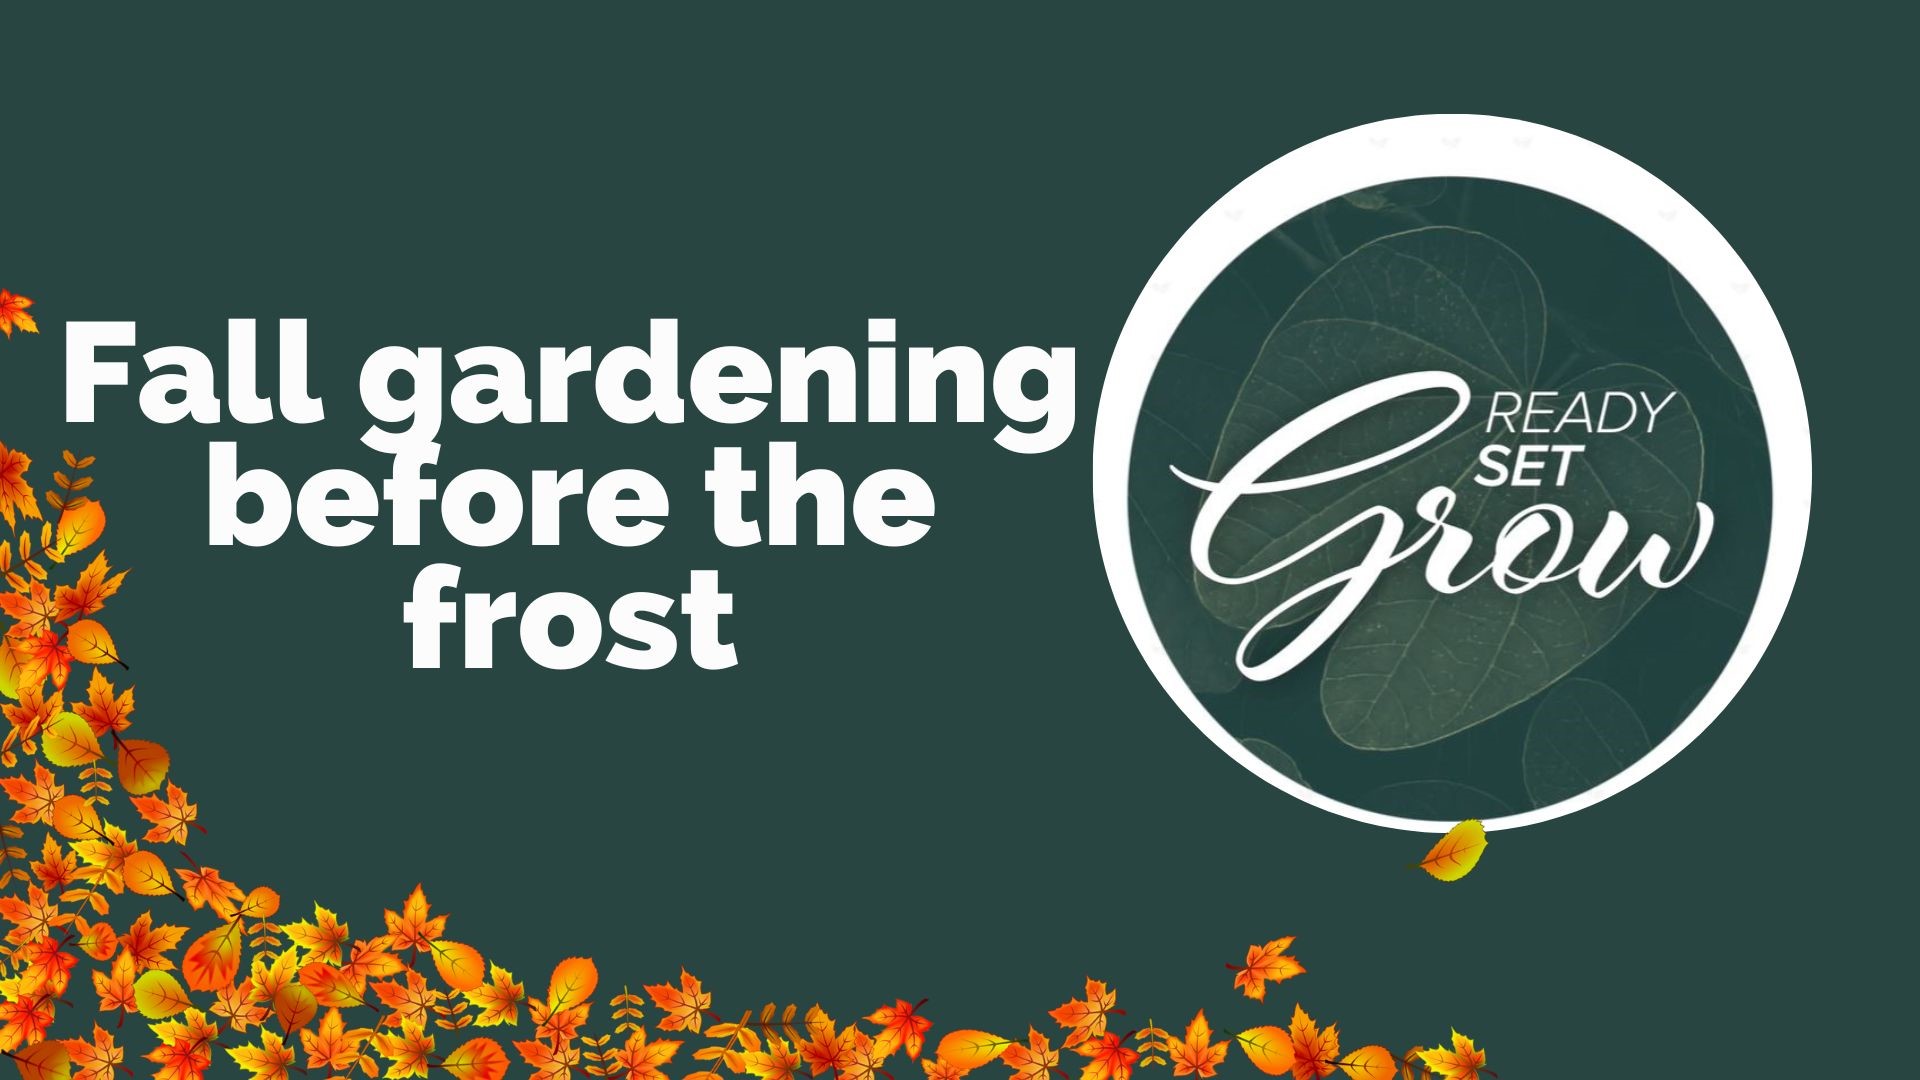 Come preparare i tuoi giardini e le tue piante per il freddo e il gelo, oltre a suggerimenti per pulire le foglie dai cortili e la scienza dietro il fogliame autunnale.